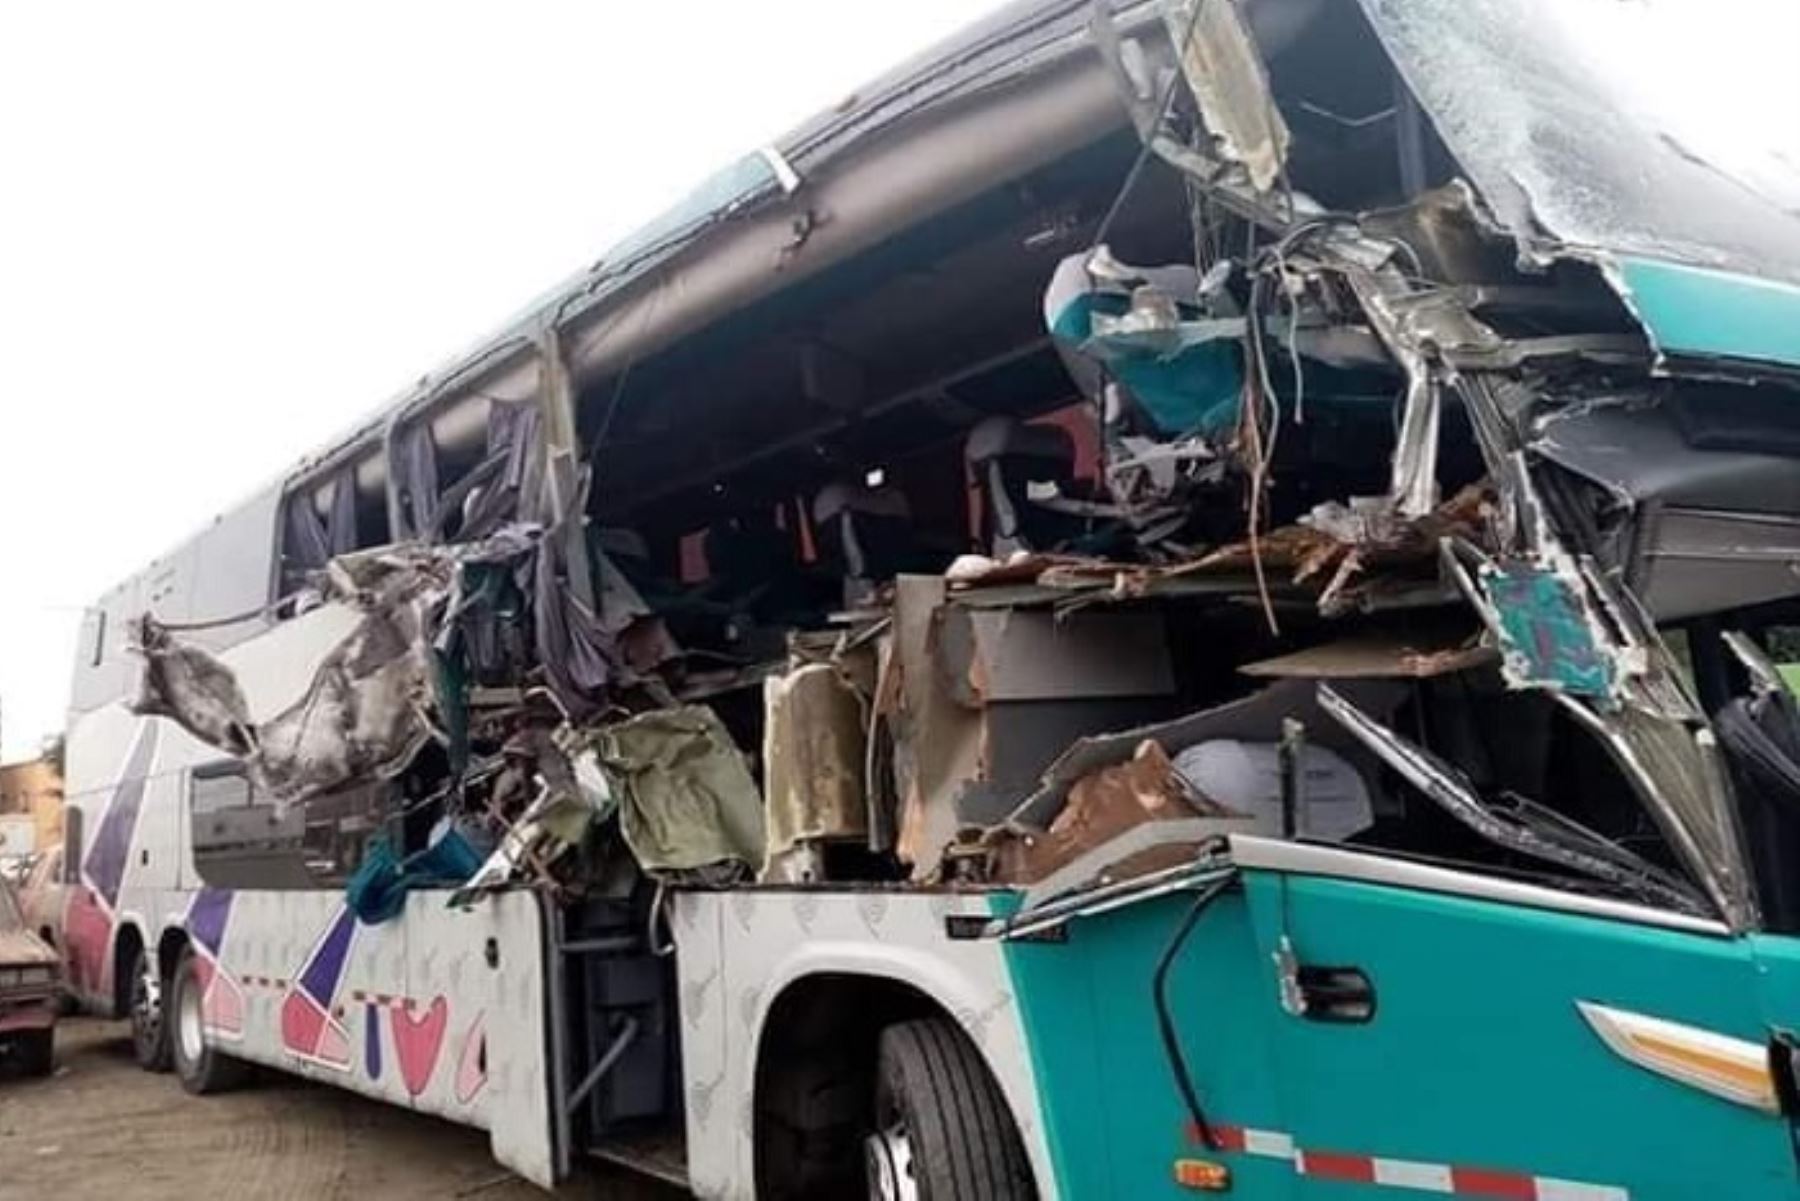 Una profesora murió y otras 11 personas resultaron heridas producto de un accidente de tránsito ocurrido en el kilómetro 328 de la carretera Panamericana Norte, a la altura de la provincia de Huarmey, región Áncash.